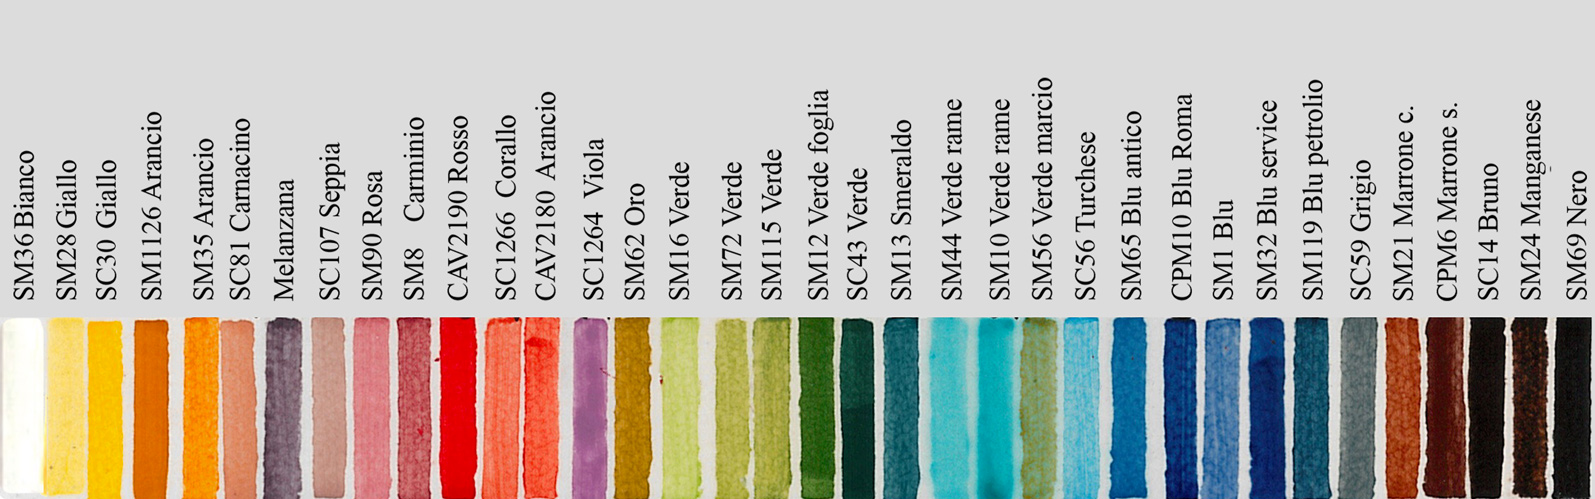 Tabella di colore per i colori del disegno, realizzato sul colore di fondo P7Riferimento per i colori di fondo sono la serie Panorama